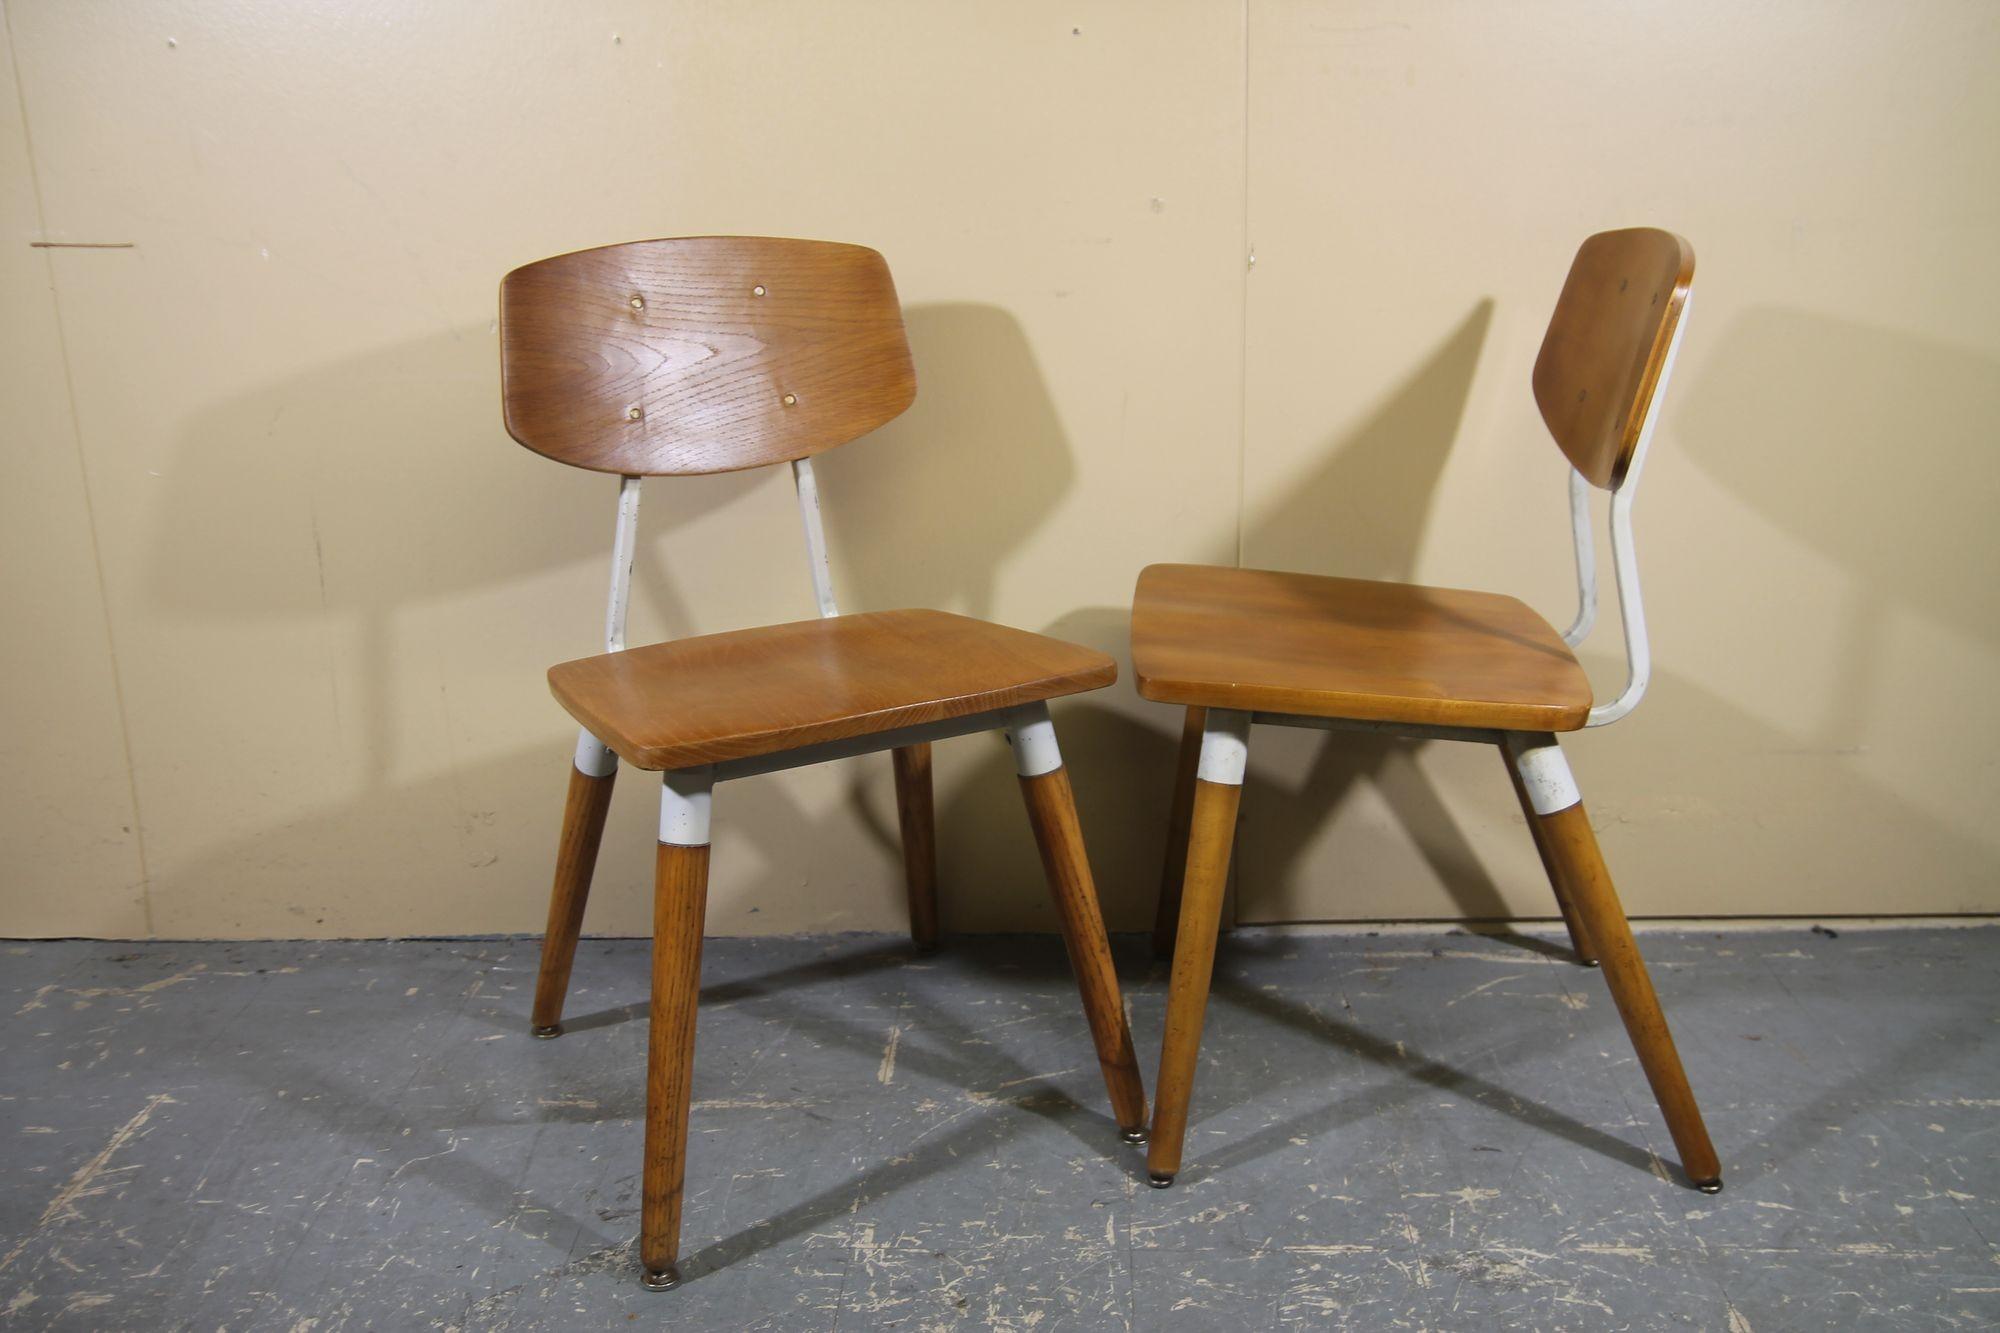 Wir bieten ein schönes Paar Stühle an, die von Raymond Loewy für Hill Rom entworfen wurden. Diese Wartezimmerstühle aus den 1950er Jahren sind aus weiß lackiertem Nussbaum und Stahl gefertigt. Ein großartiges Paar Stühle, das um Ihren kleinen Tisch